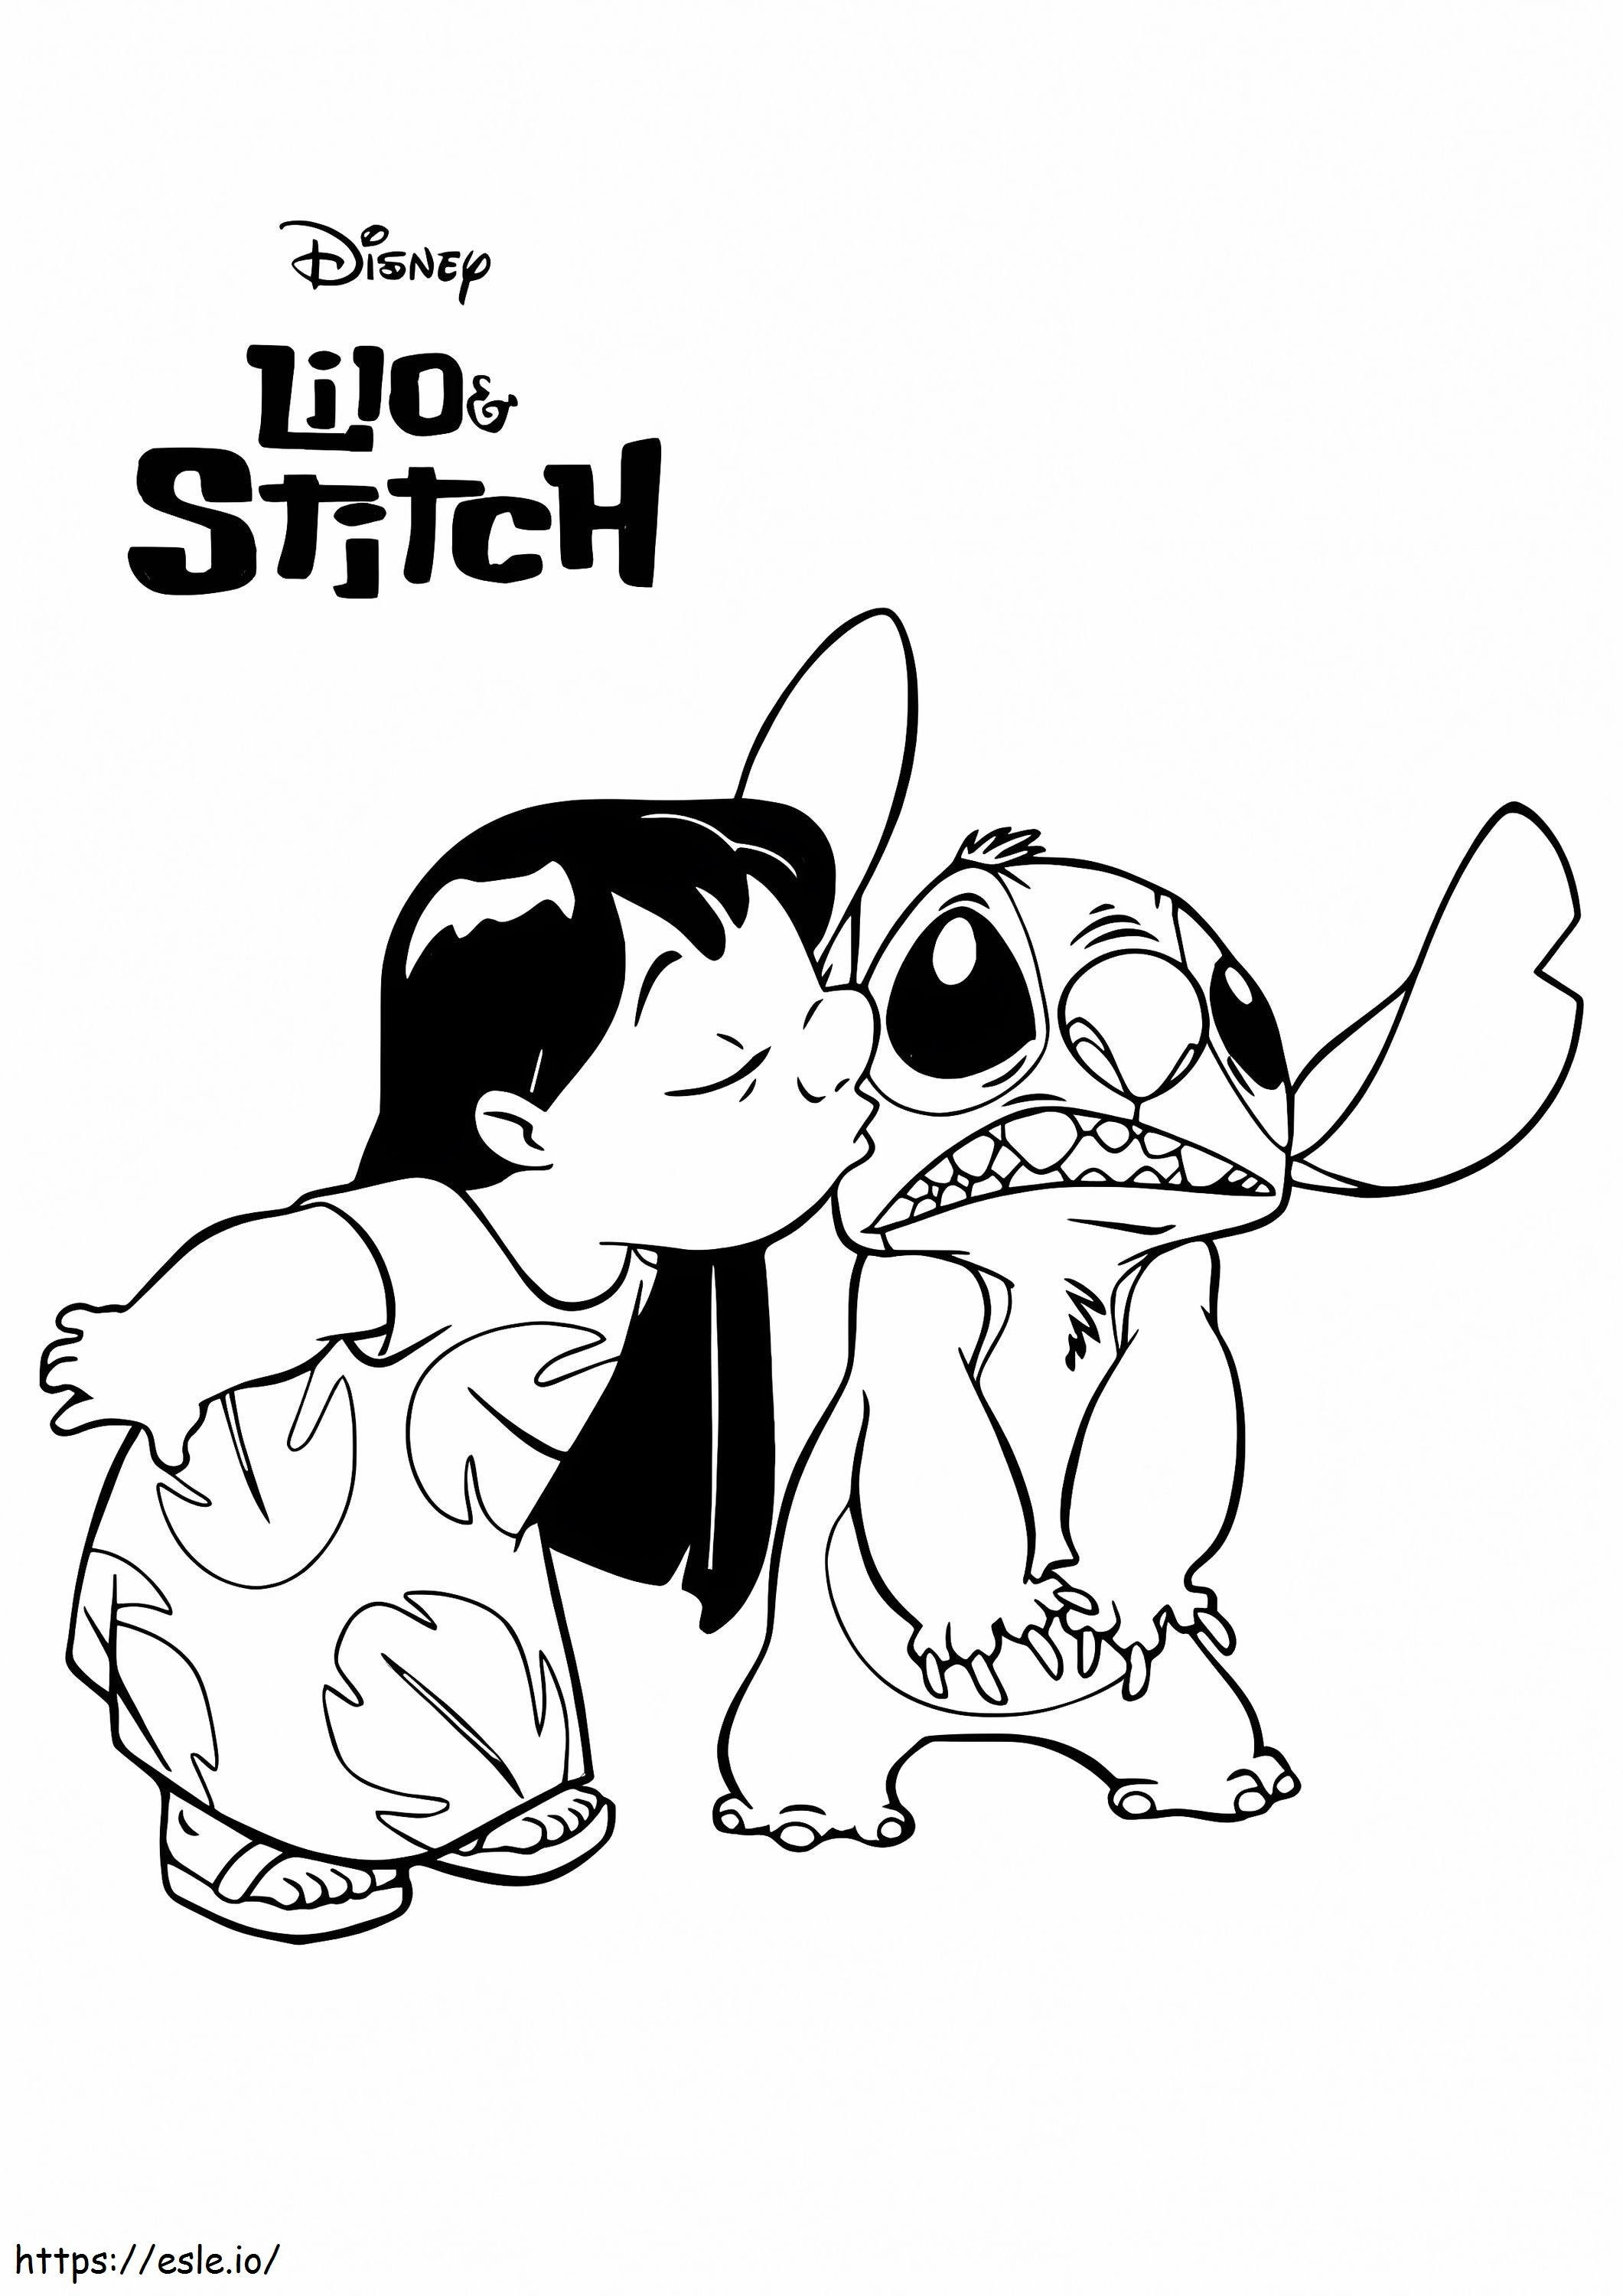 Lilo küsst Stitch ausmalbilder